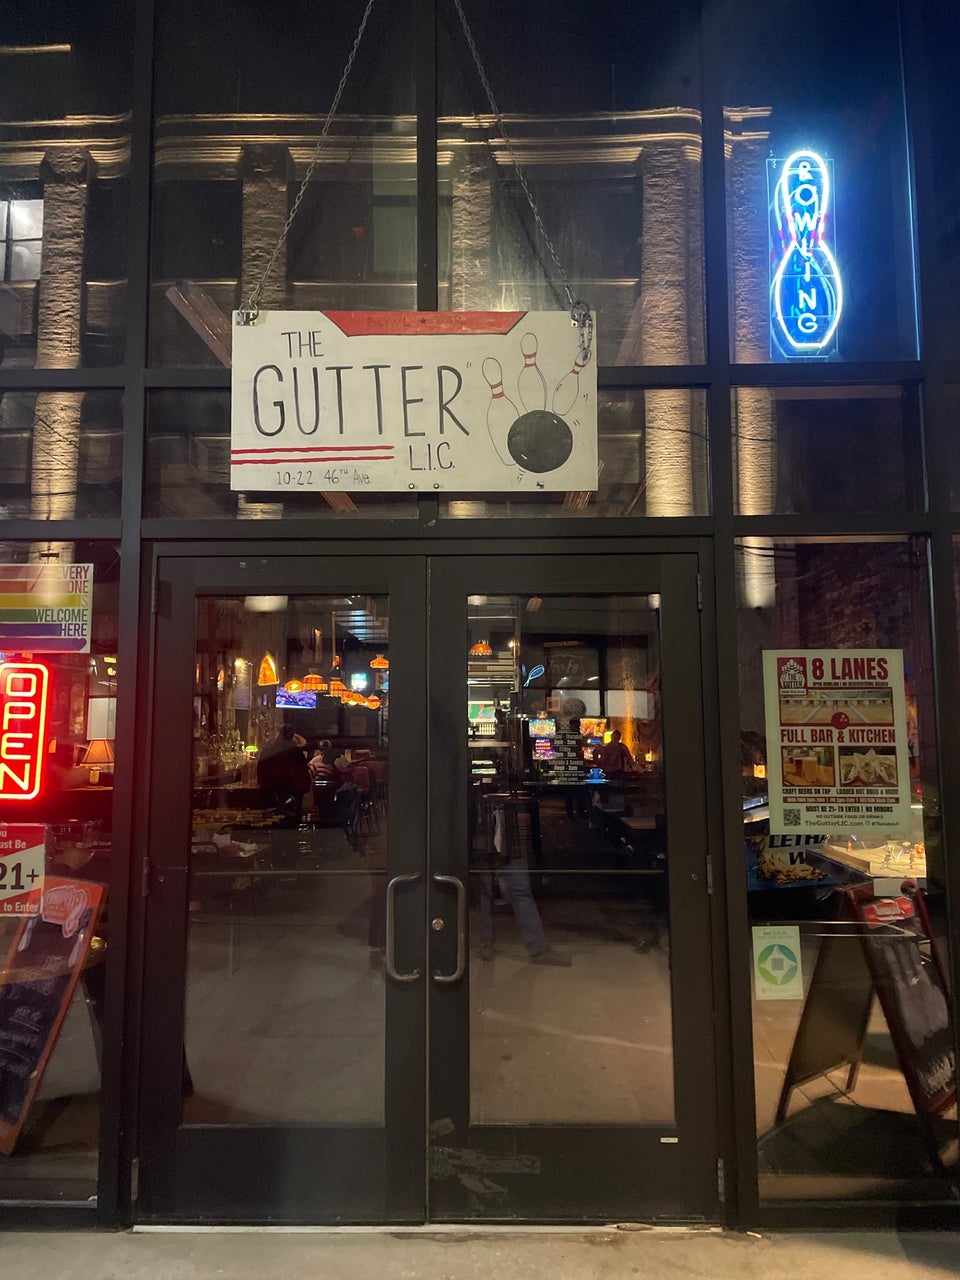 The Gutter Bar LIC